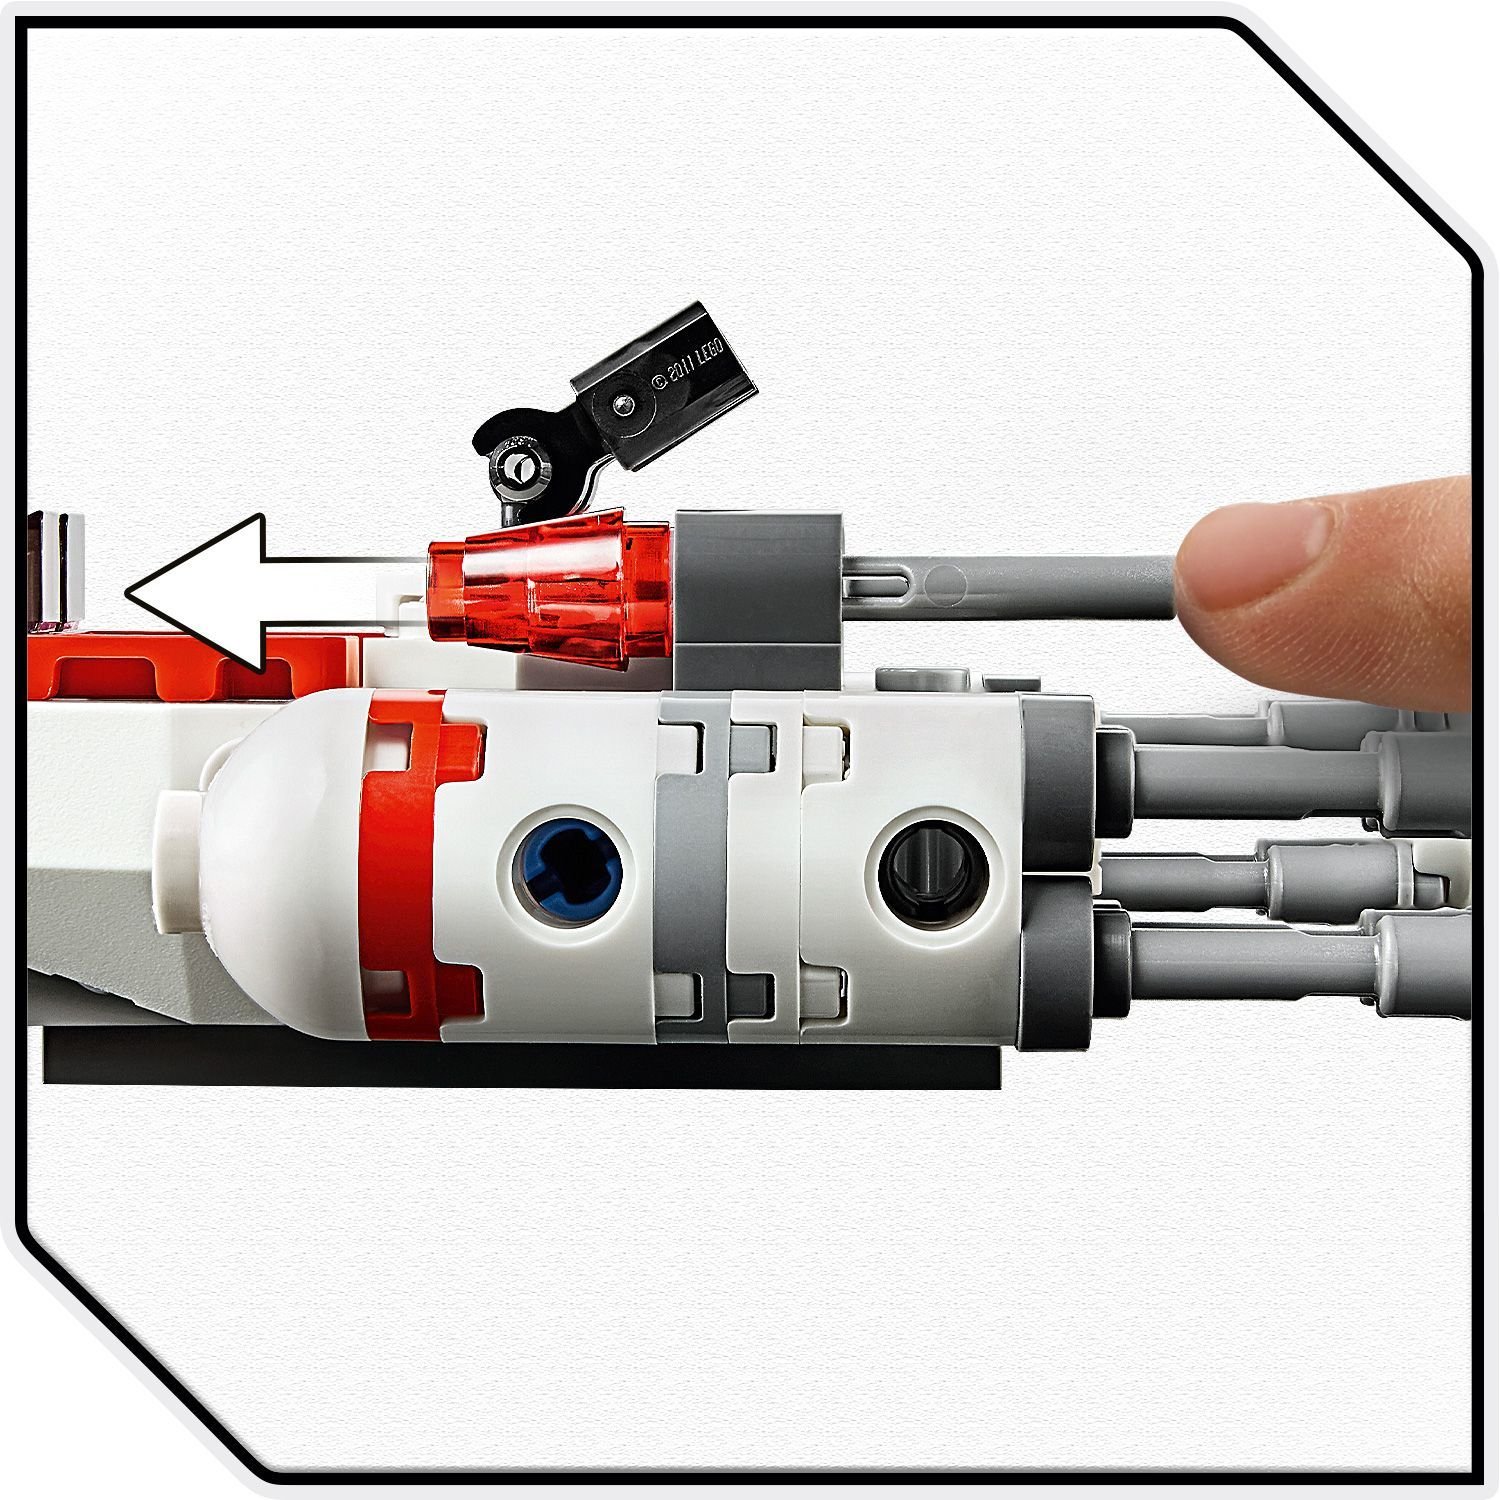 Lego Star Wars 75263 Микрофайтеры: Истребитель Сопротивления типа Y